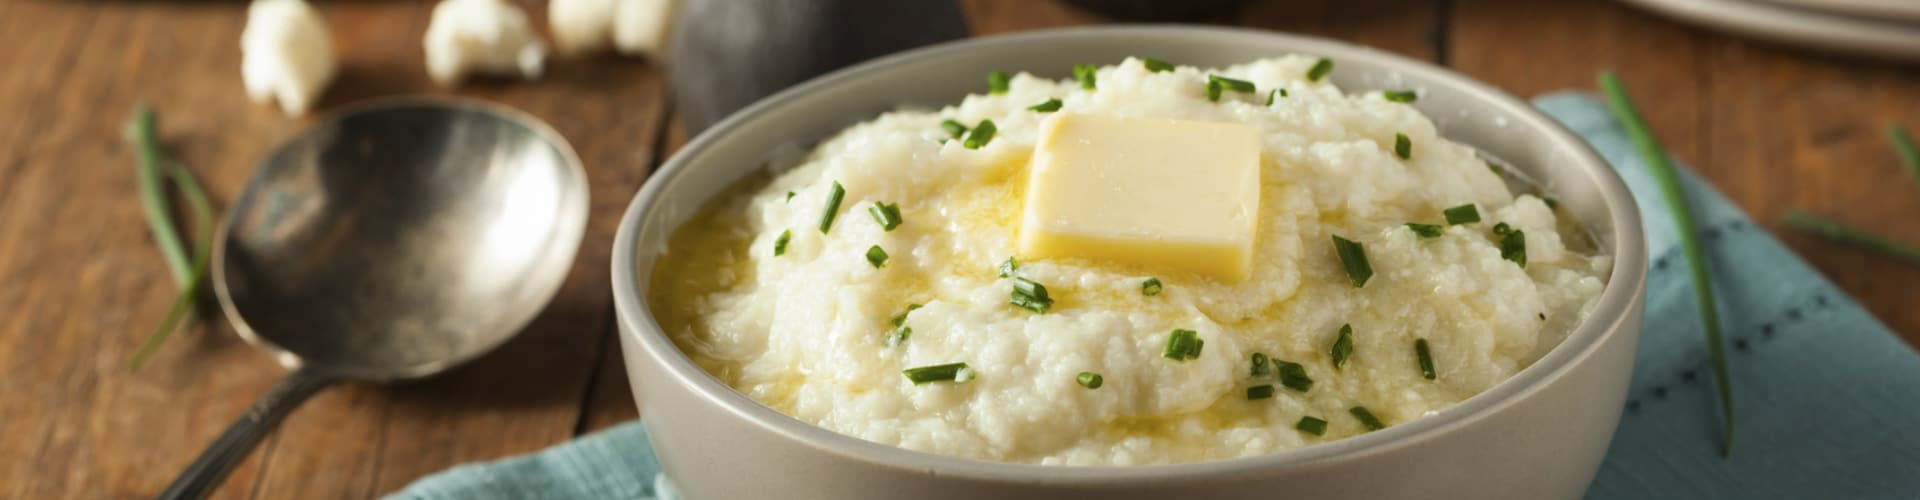 Do Mashed Potatoes Have Fiber
 Best Cauliflower Mashed Potato Recipe Under 60 Calories